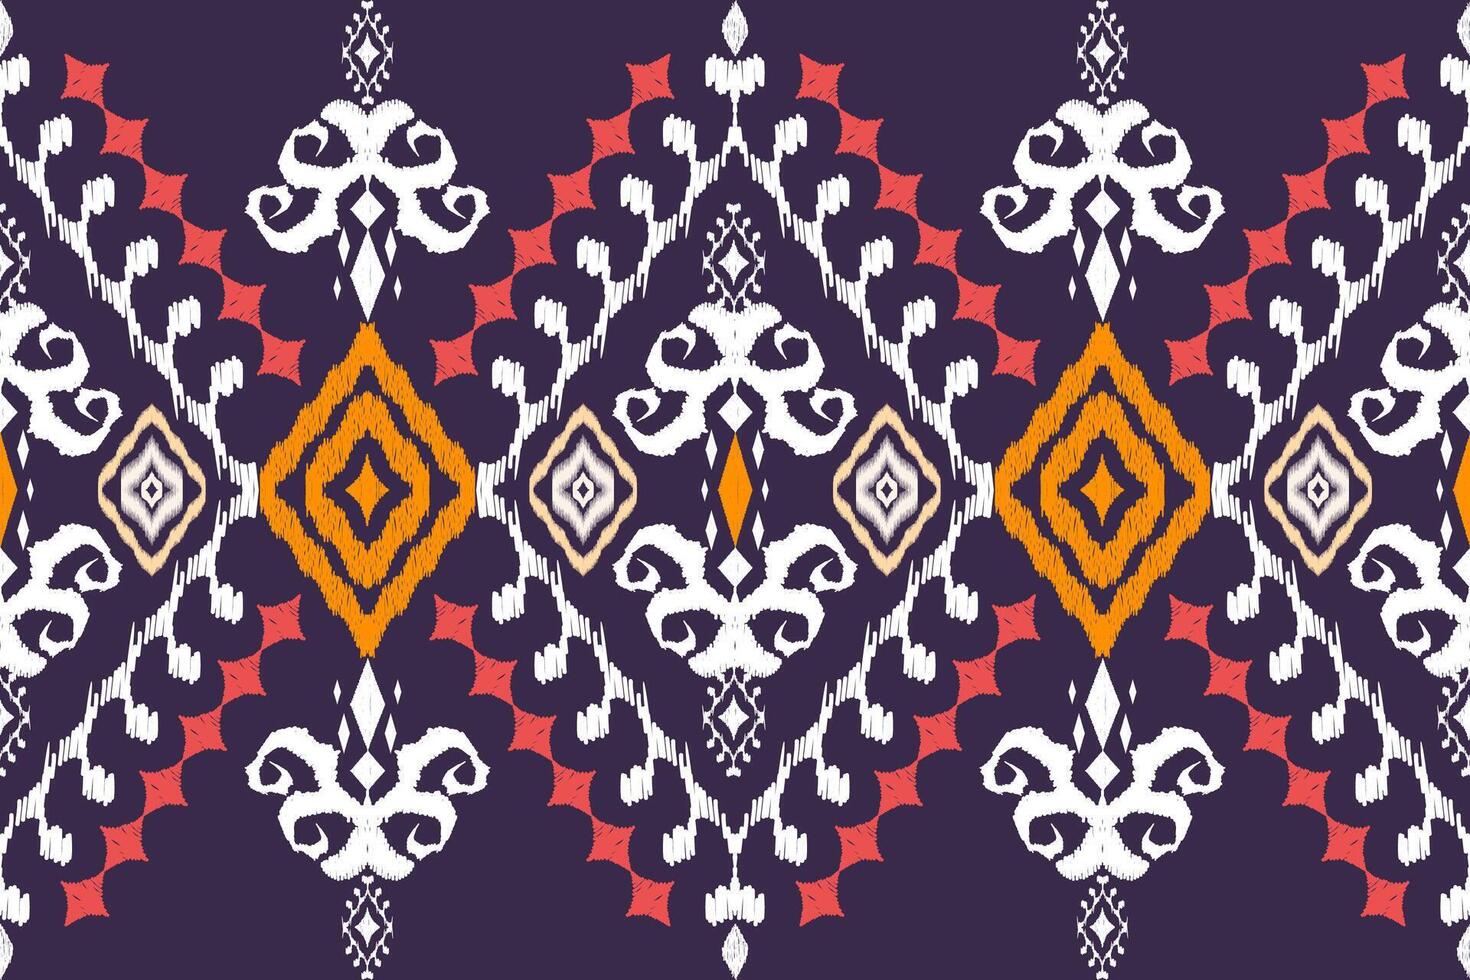 etnisk figur aztec broderi stil.geometrisk ikat orientalisk traditionell konst mönster.design för etnisk bakgrund, tapeter, mode, kläder, omslag, tyg, element, sarong, grafik, vektor illustration.